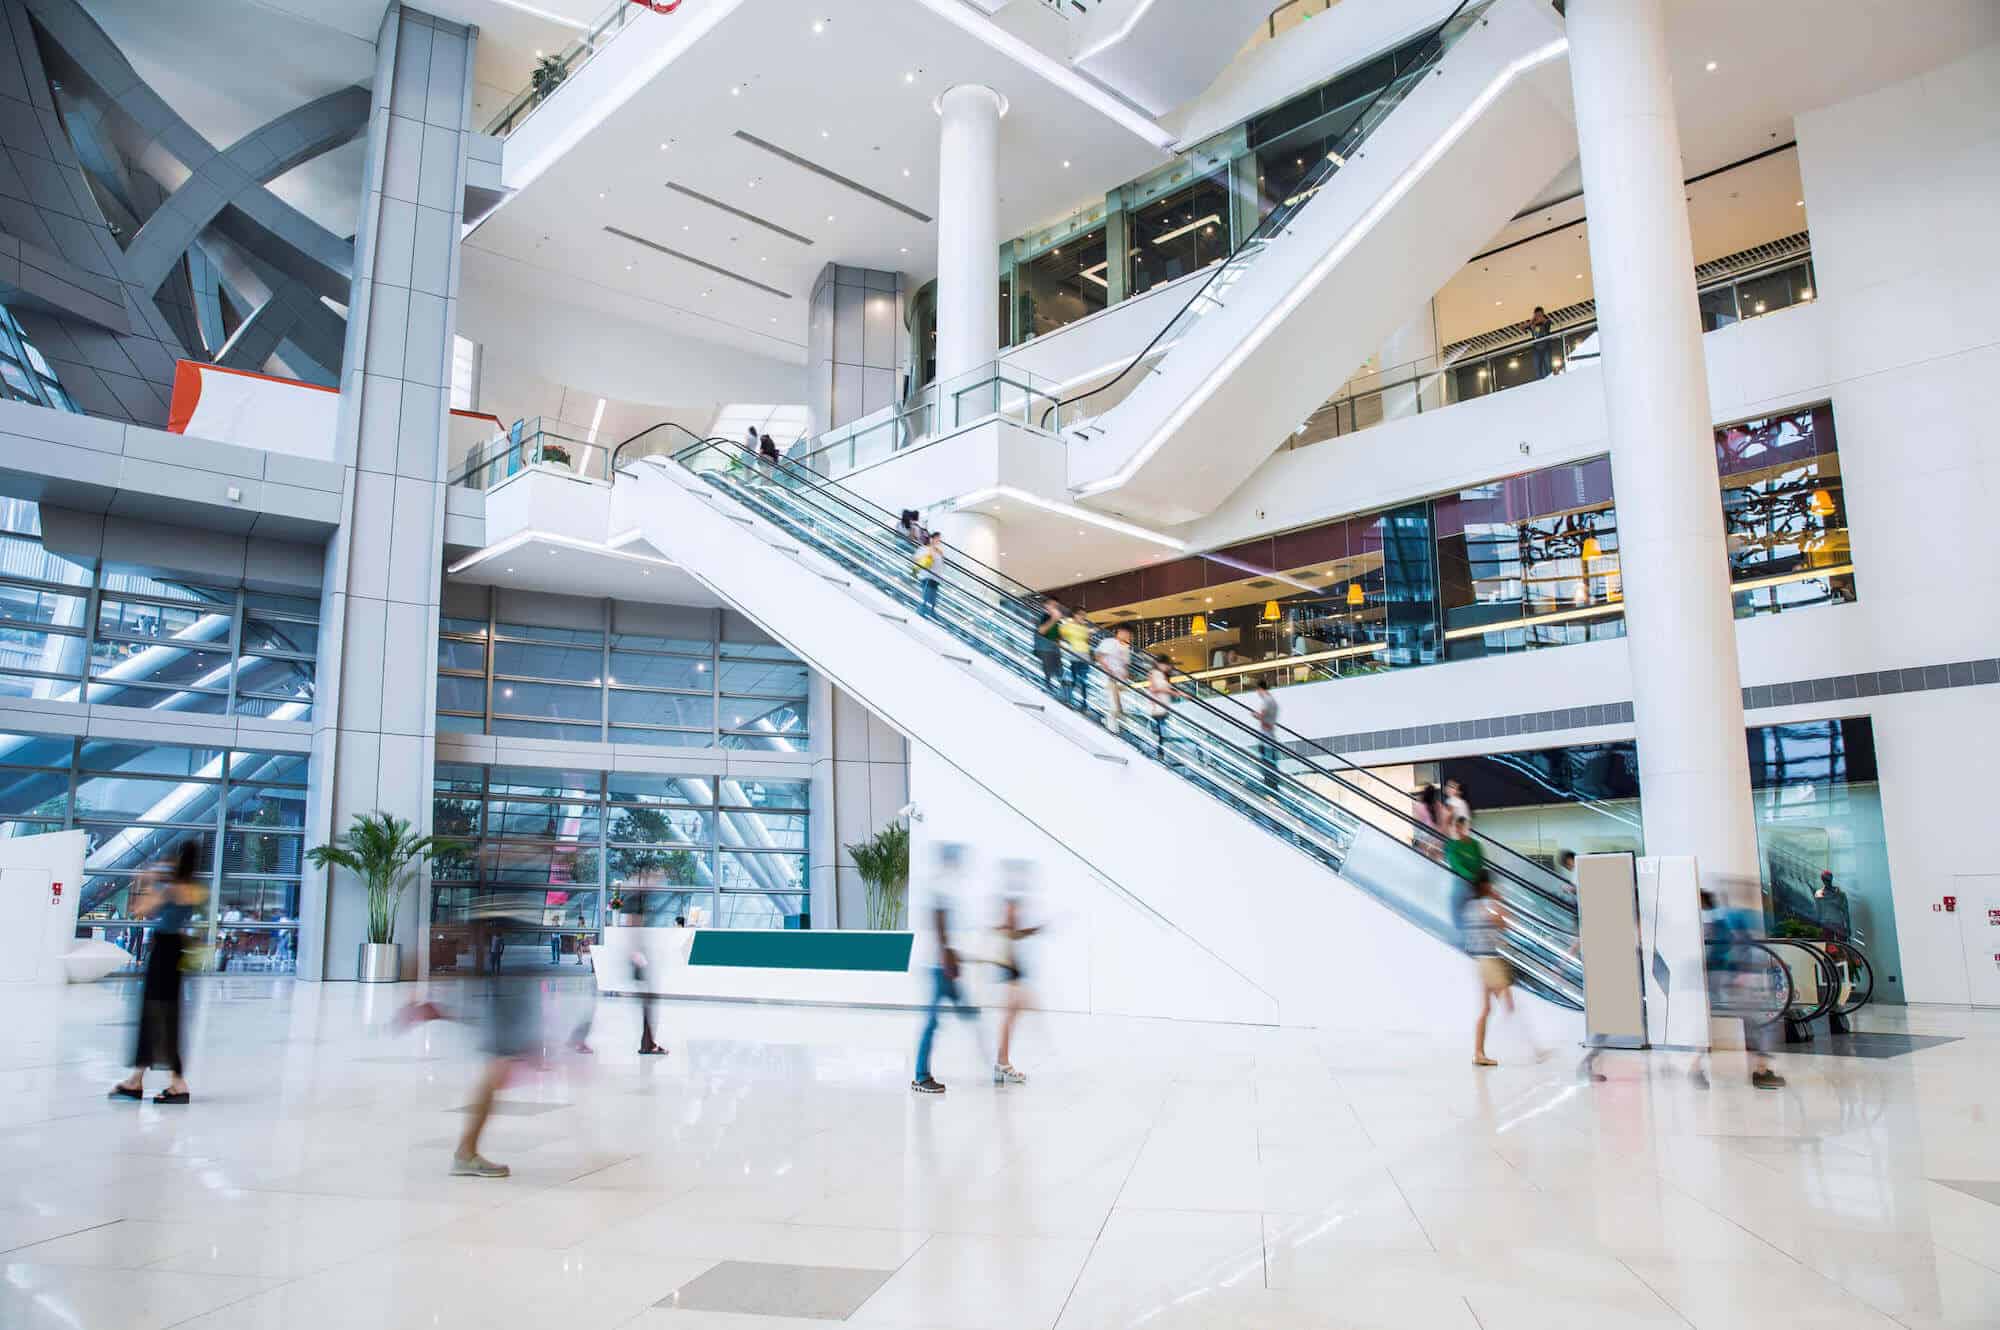 Mall Interior Design Elements For the Future